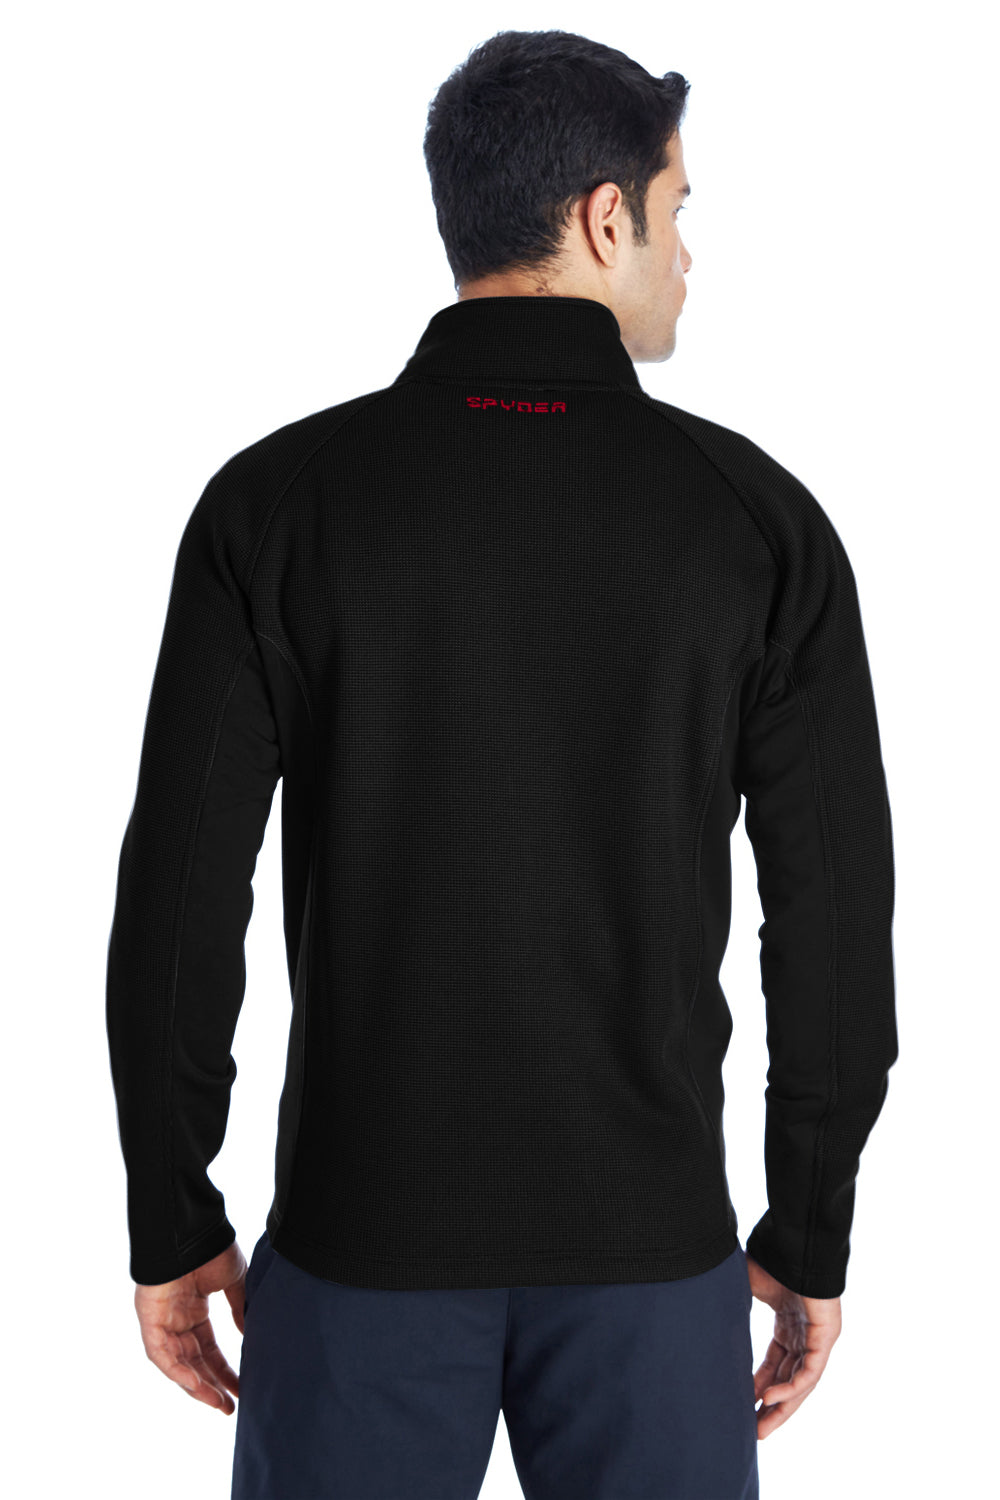 Spyder 187330 Mens Constant Full Zip Sweater Fleece Jacket Black Back